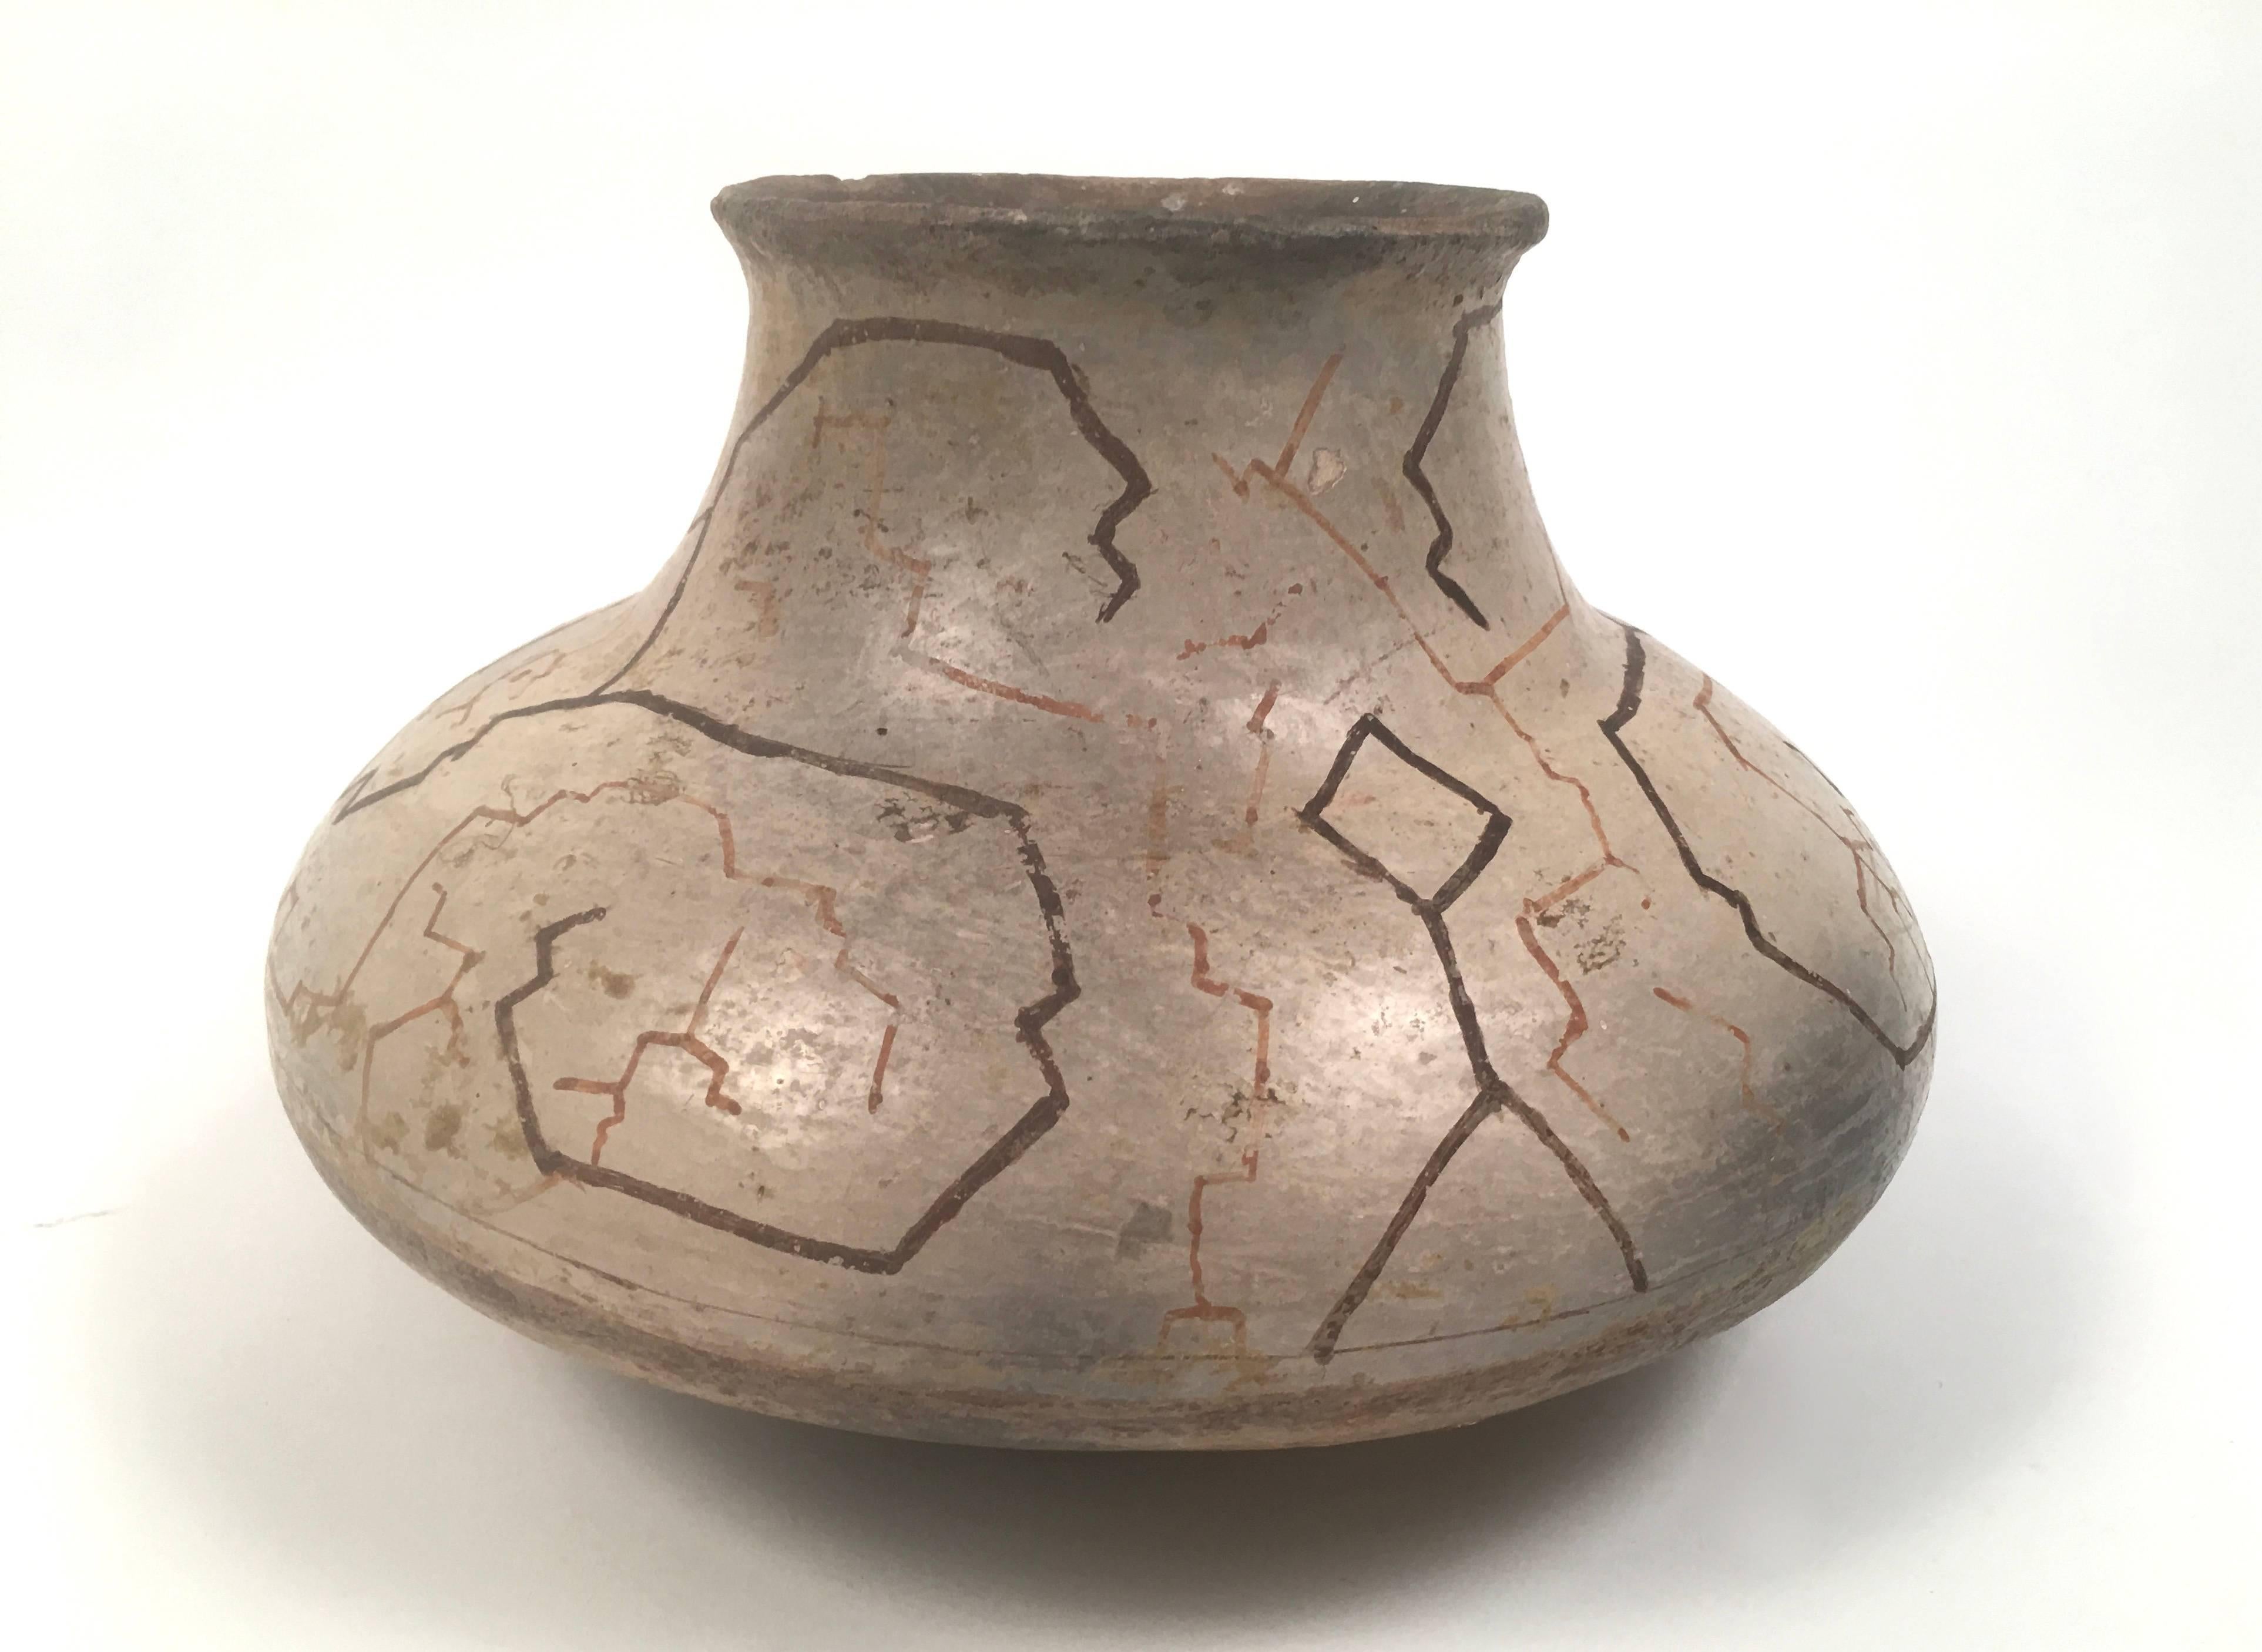 Vase en poterie peint à la main par le peuple Shipibo du Pérou:: vers 1900:: en faïence avec des motifs géométriques peints à la main:: en utilisant des pigments naturels:: qui représentent des constellations et diverses planètes. Superbe surface